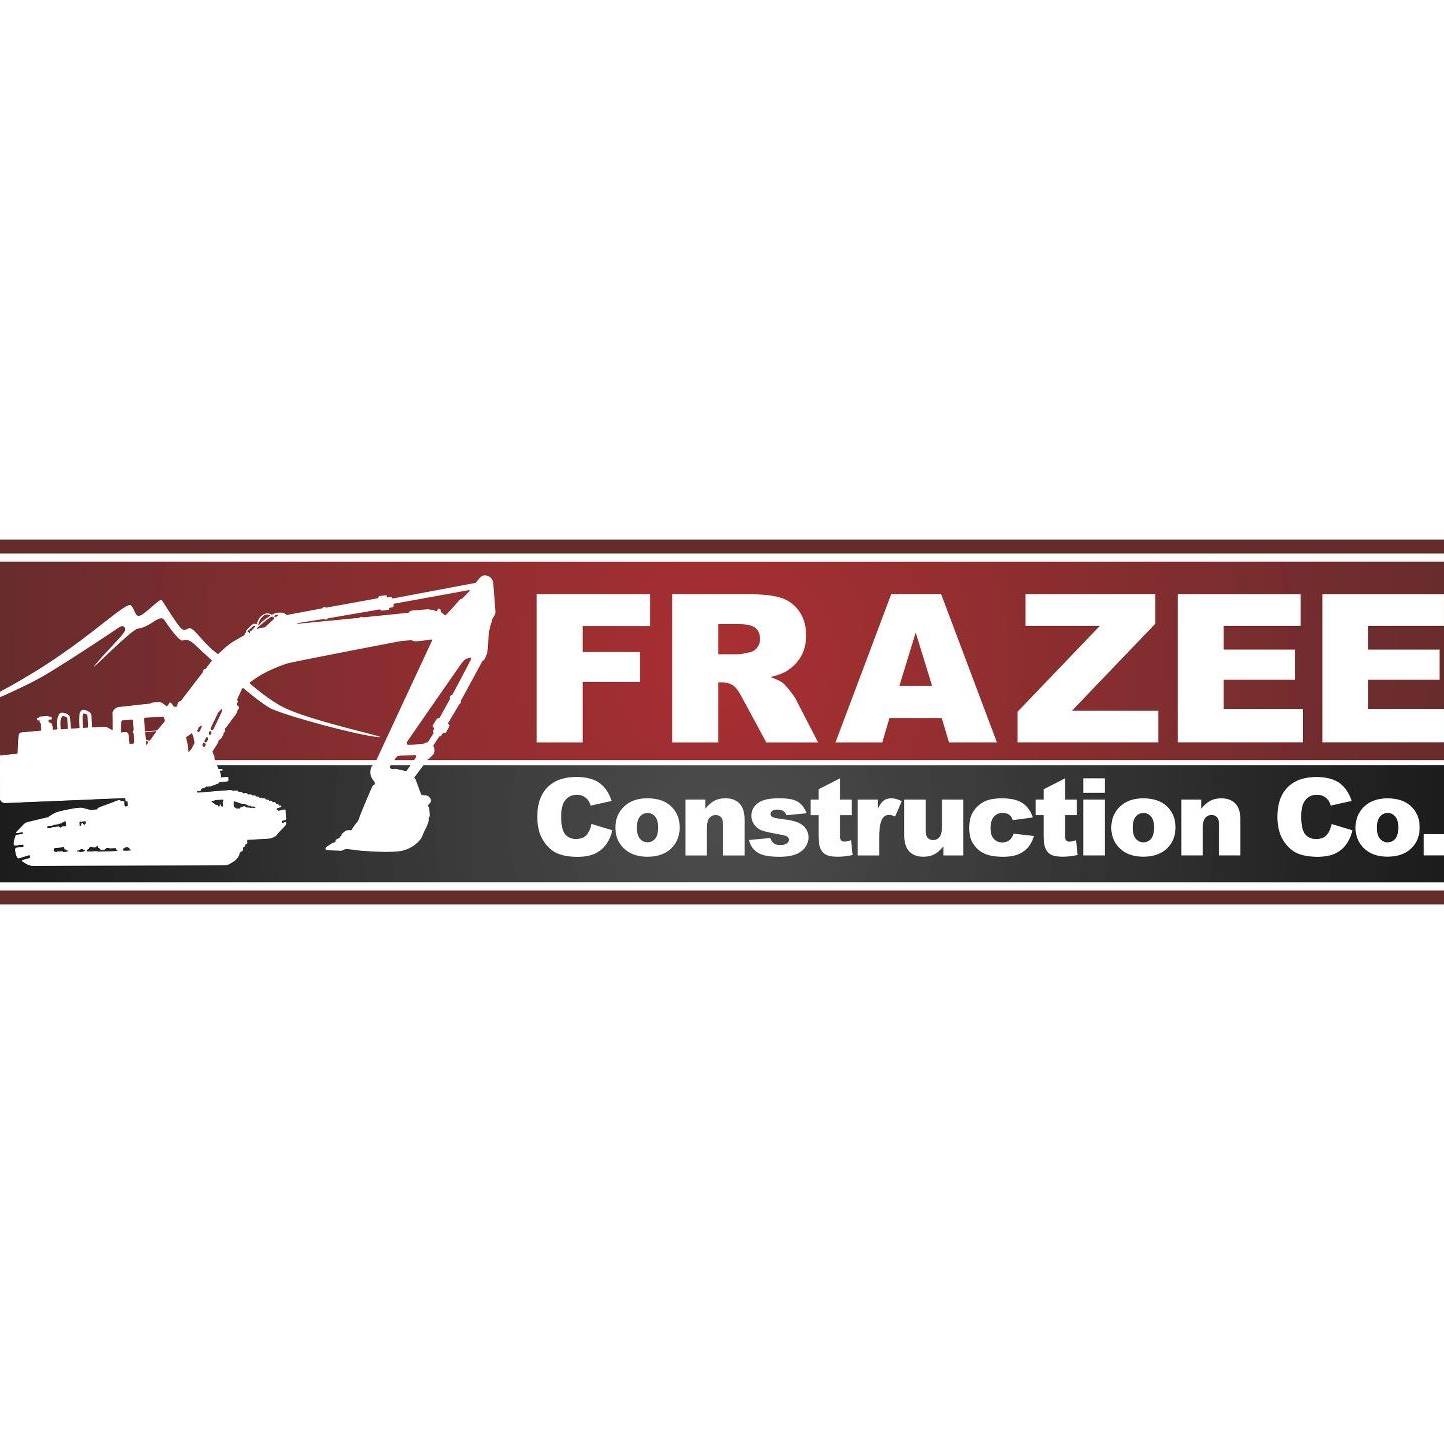 Company logo of Frazee Construction Co